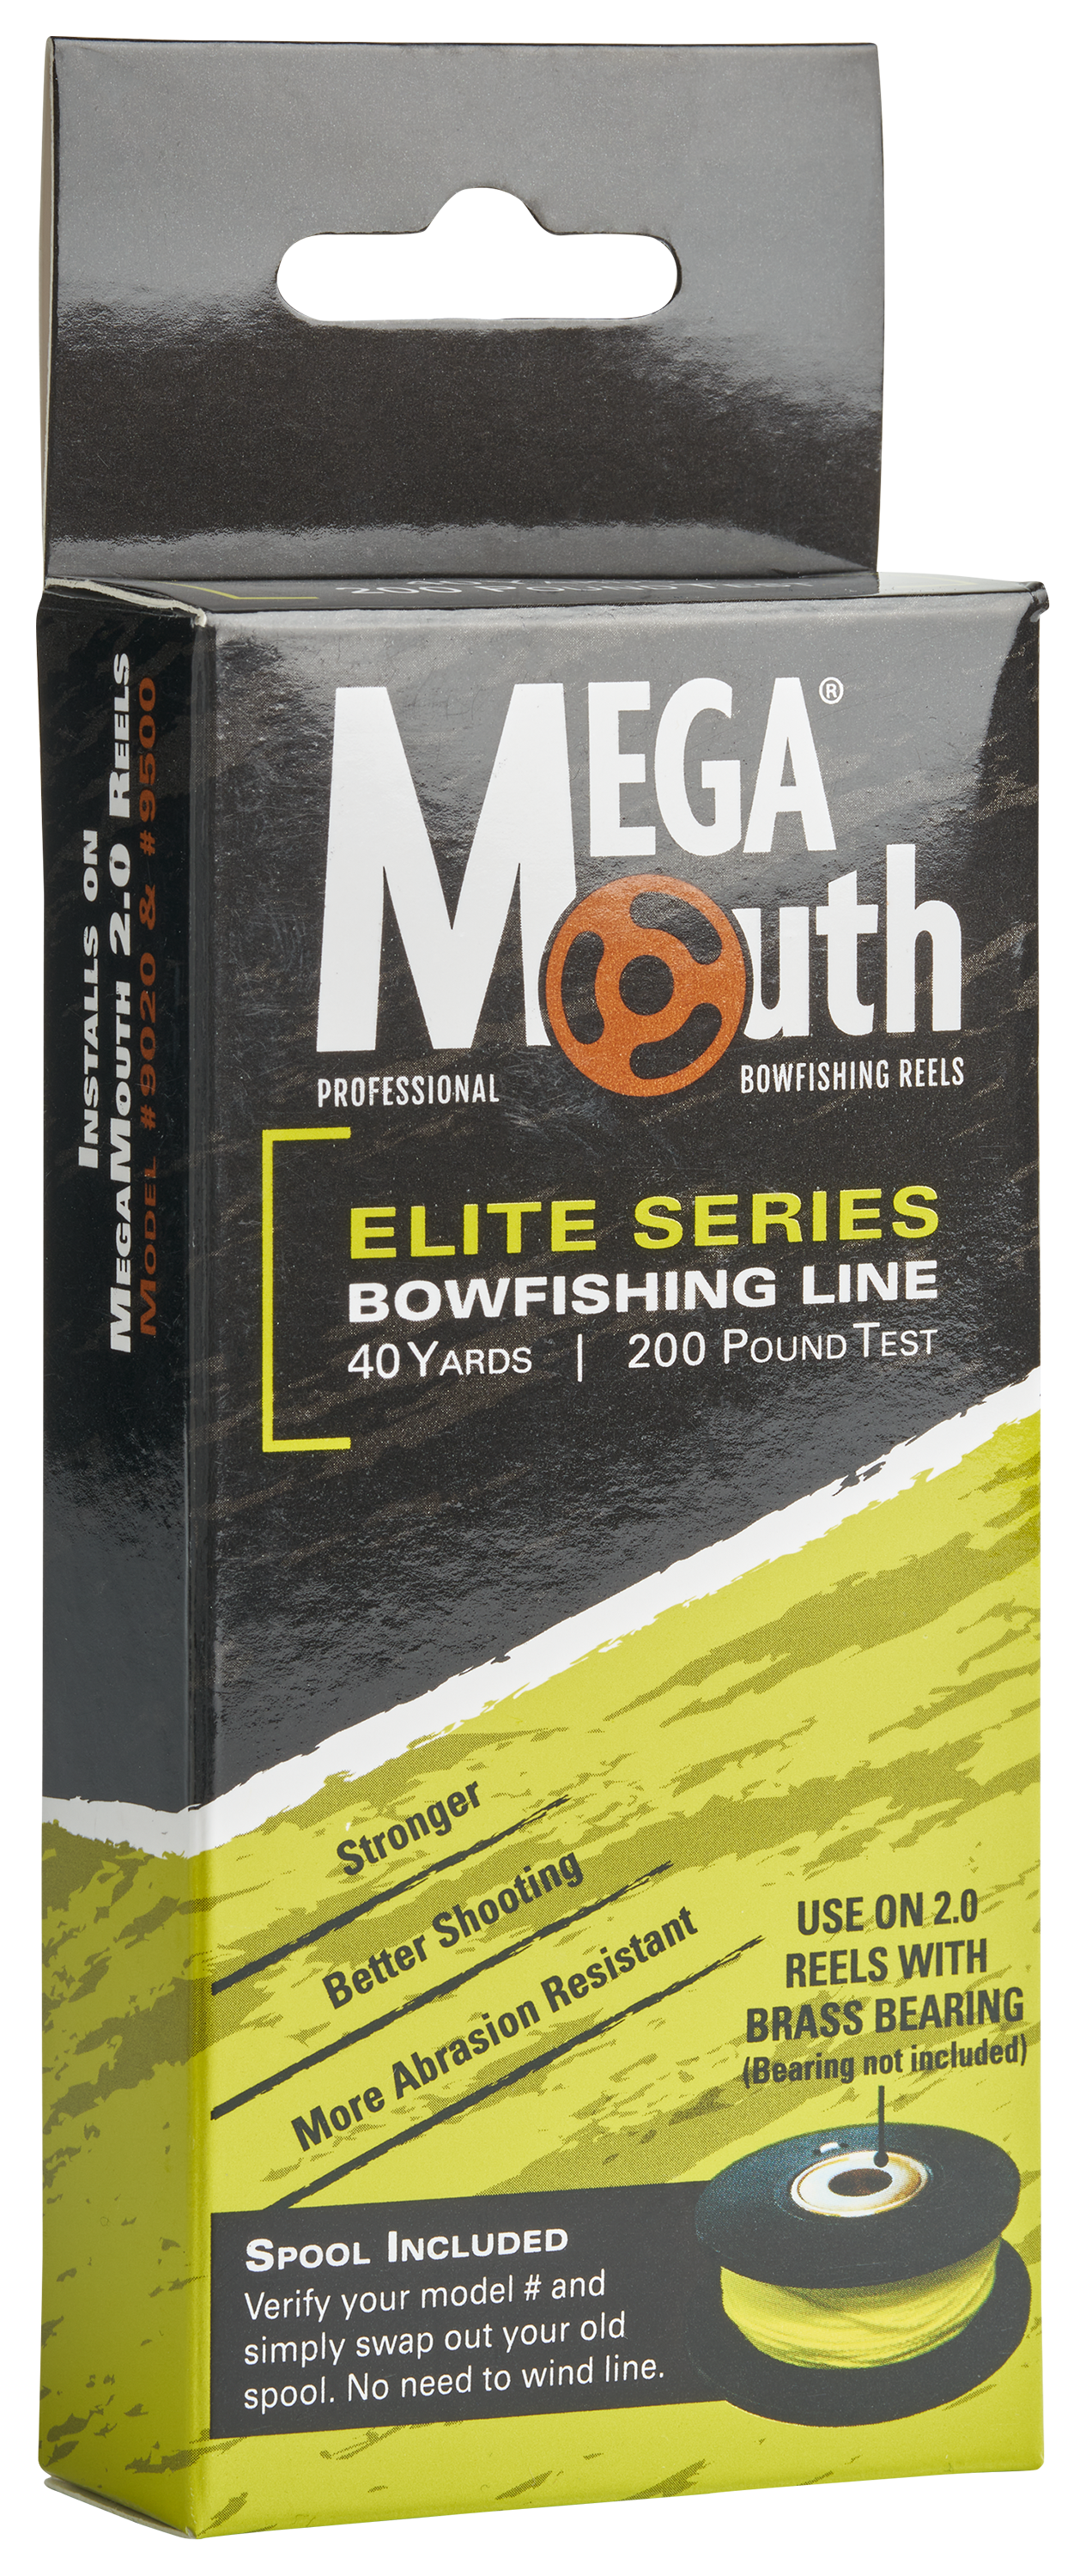 AMSBowfishing Megamouth V2.0 Elite Series Bowfishing Line and